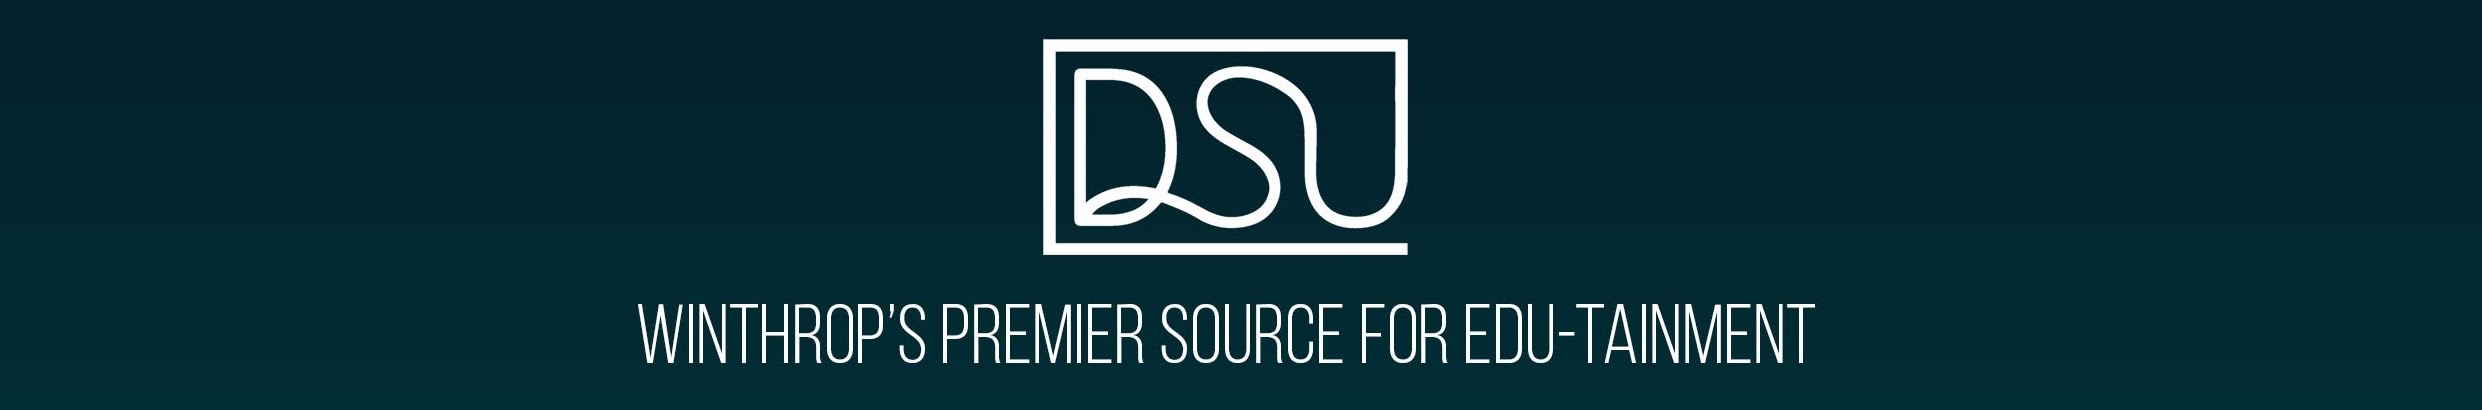 DSU Banner 